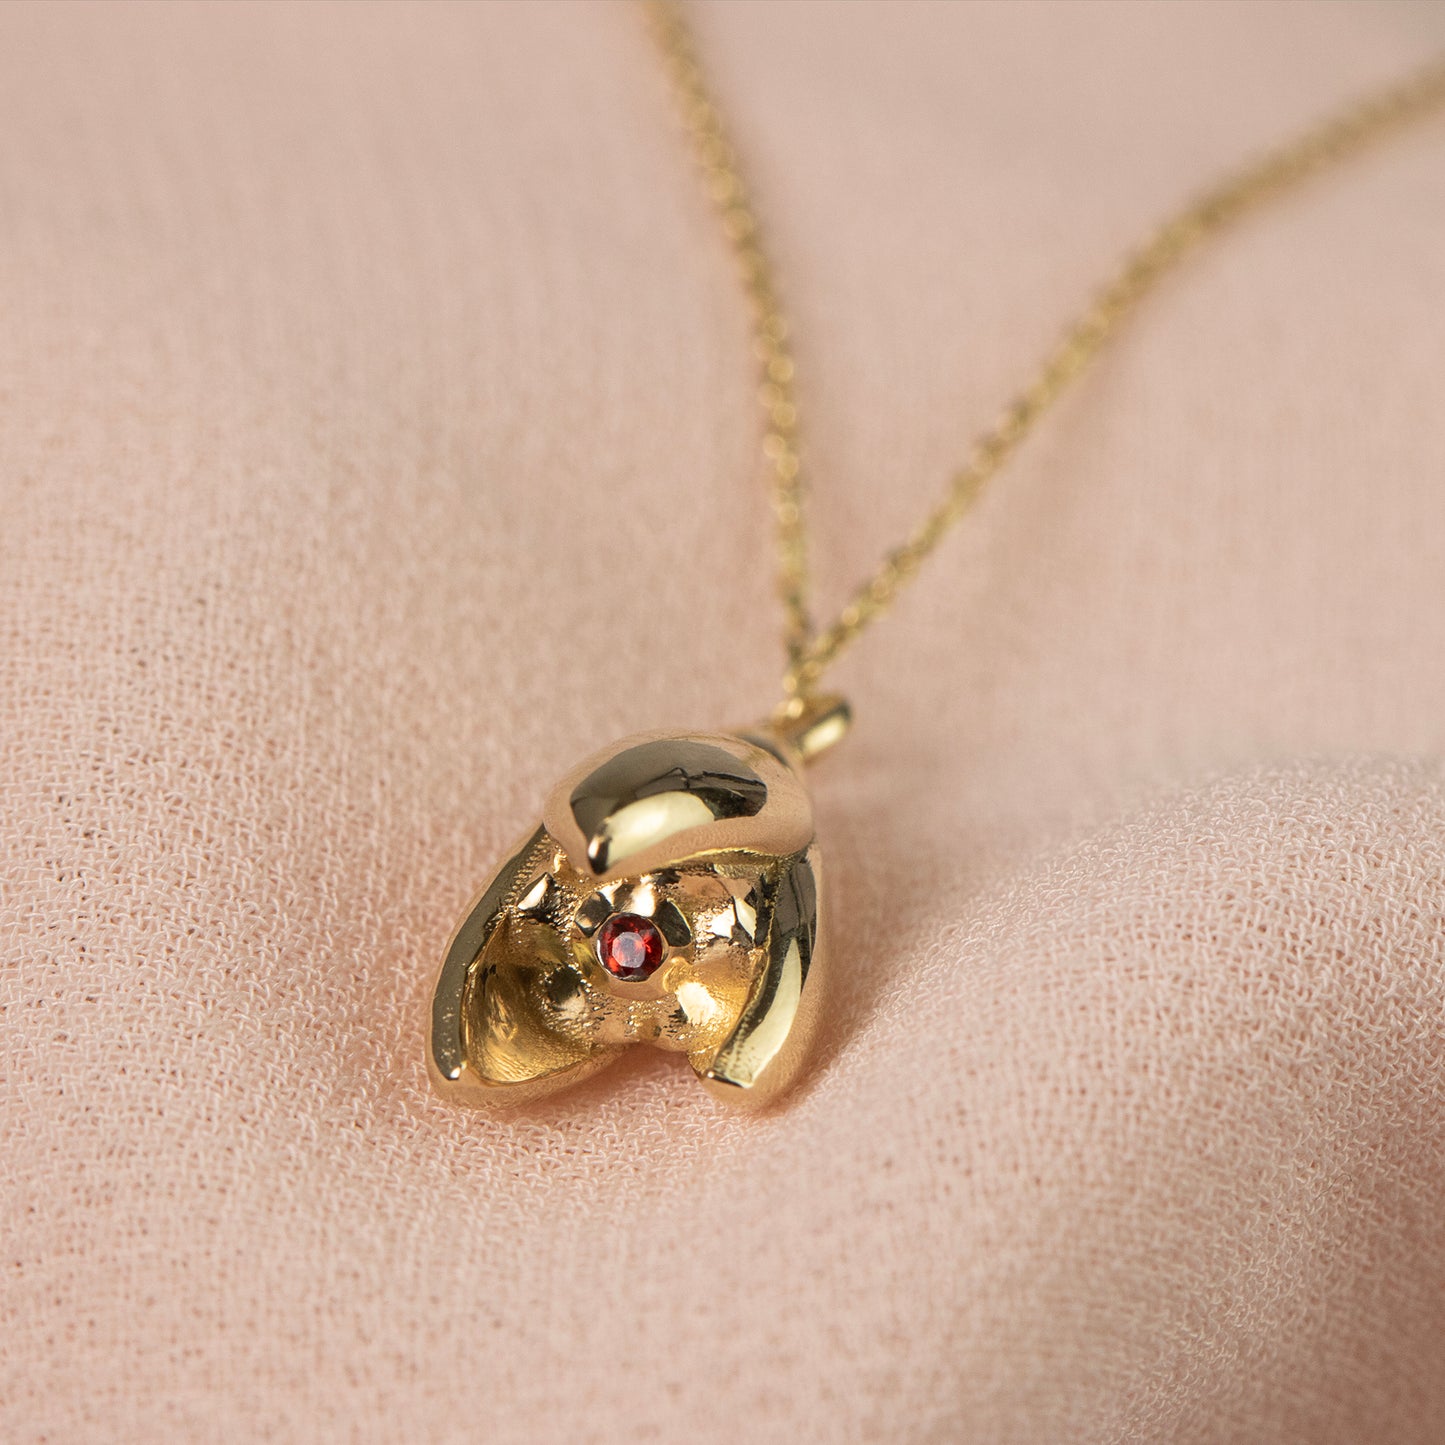 January Birth Flower & Birthstone Necklace - Snowdrop & Garnet - 9kt Gold